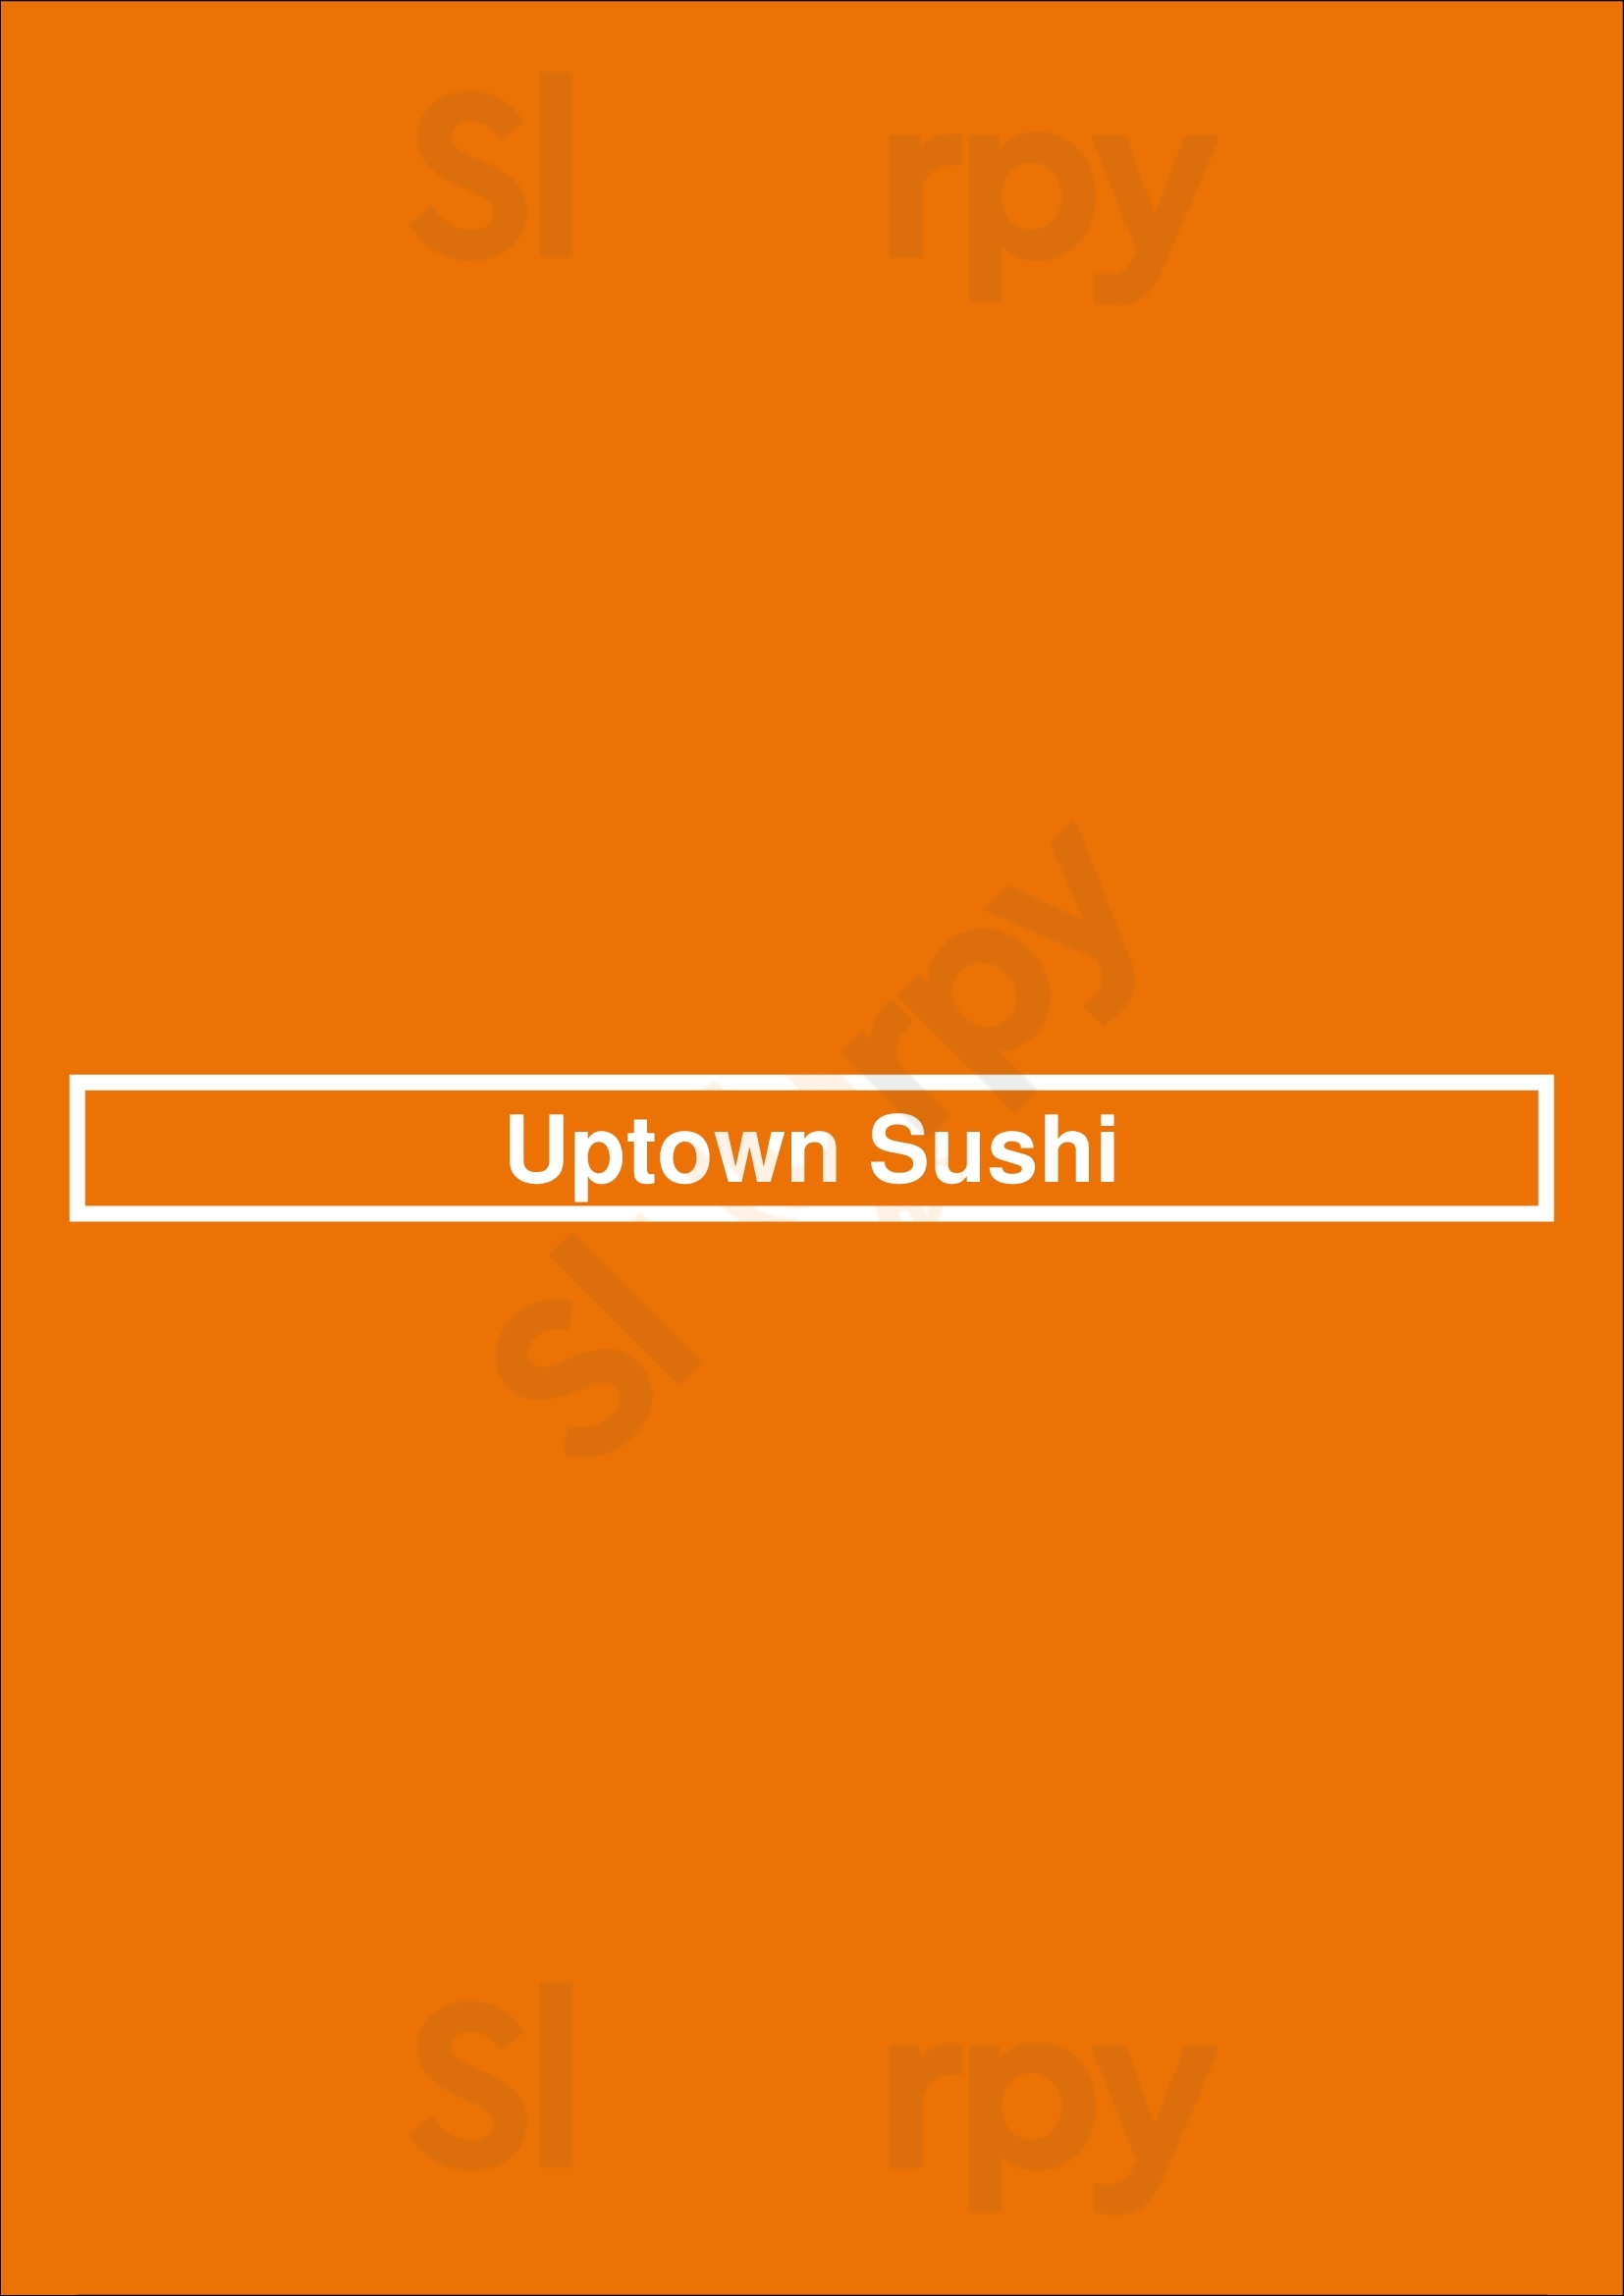 Uptown Sushi Houston Menu - 1